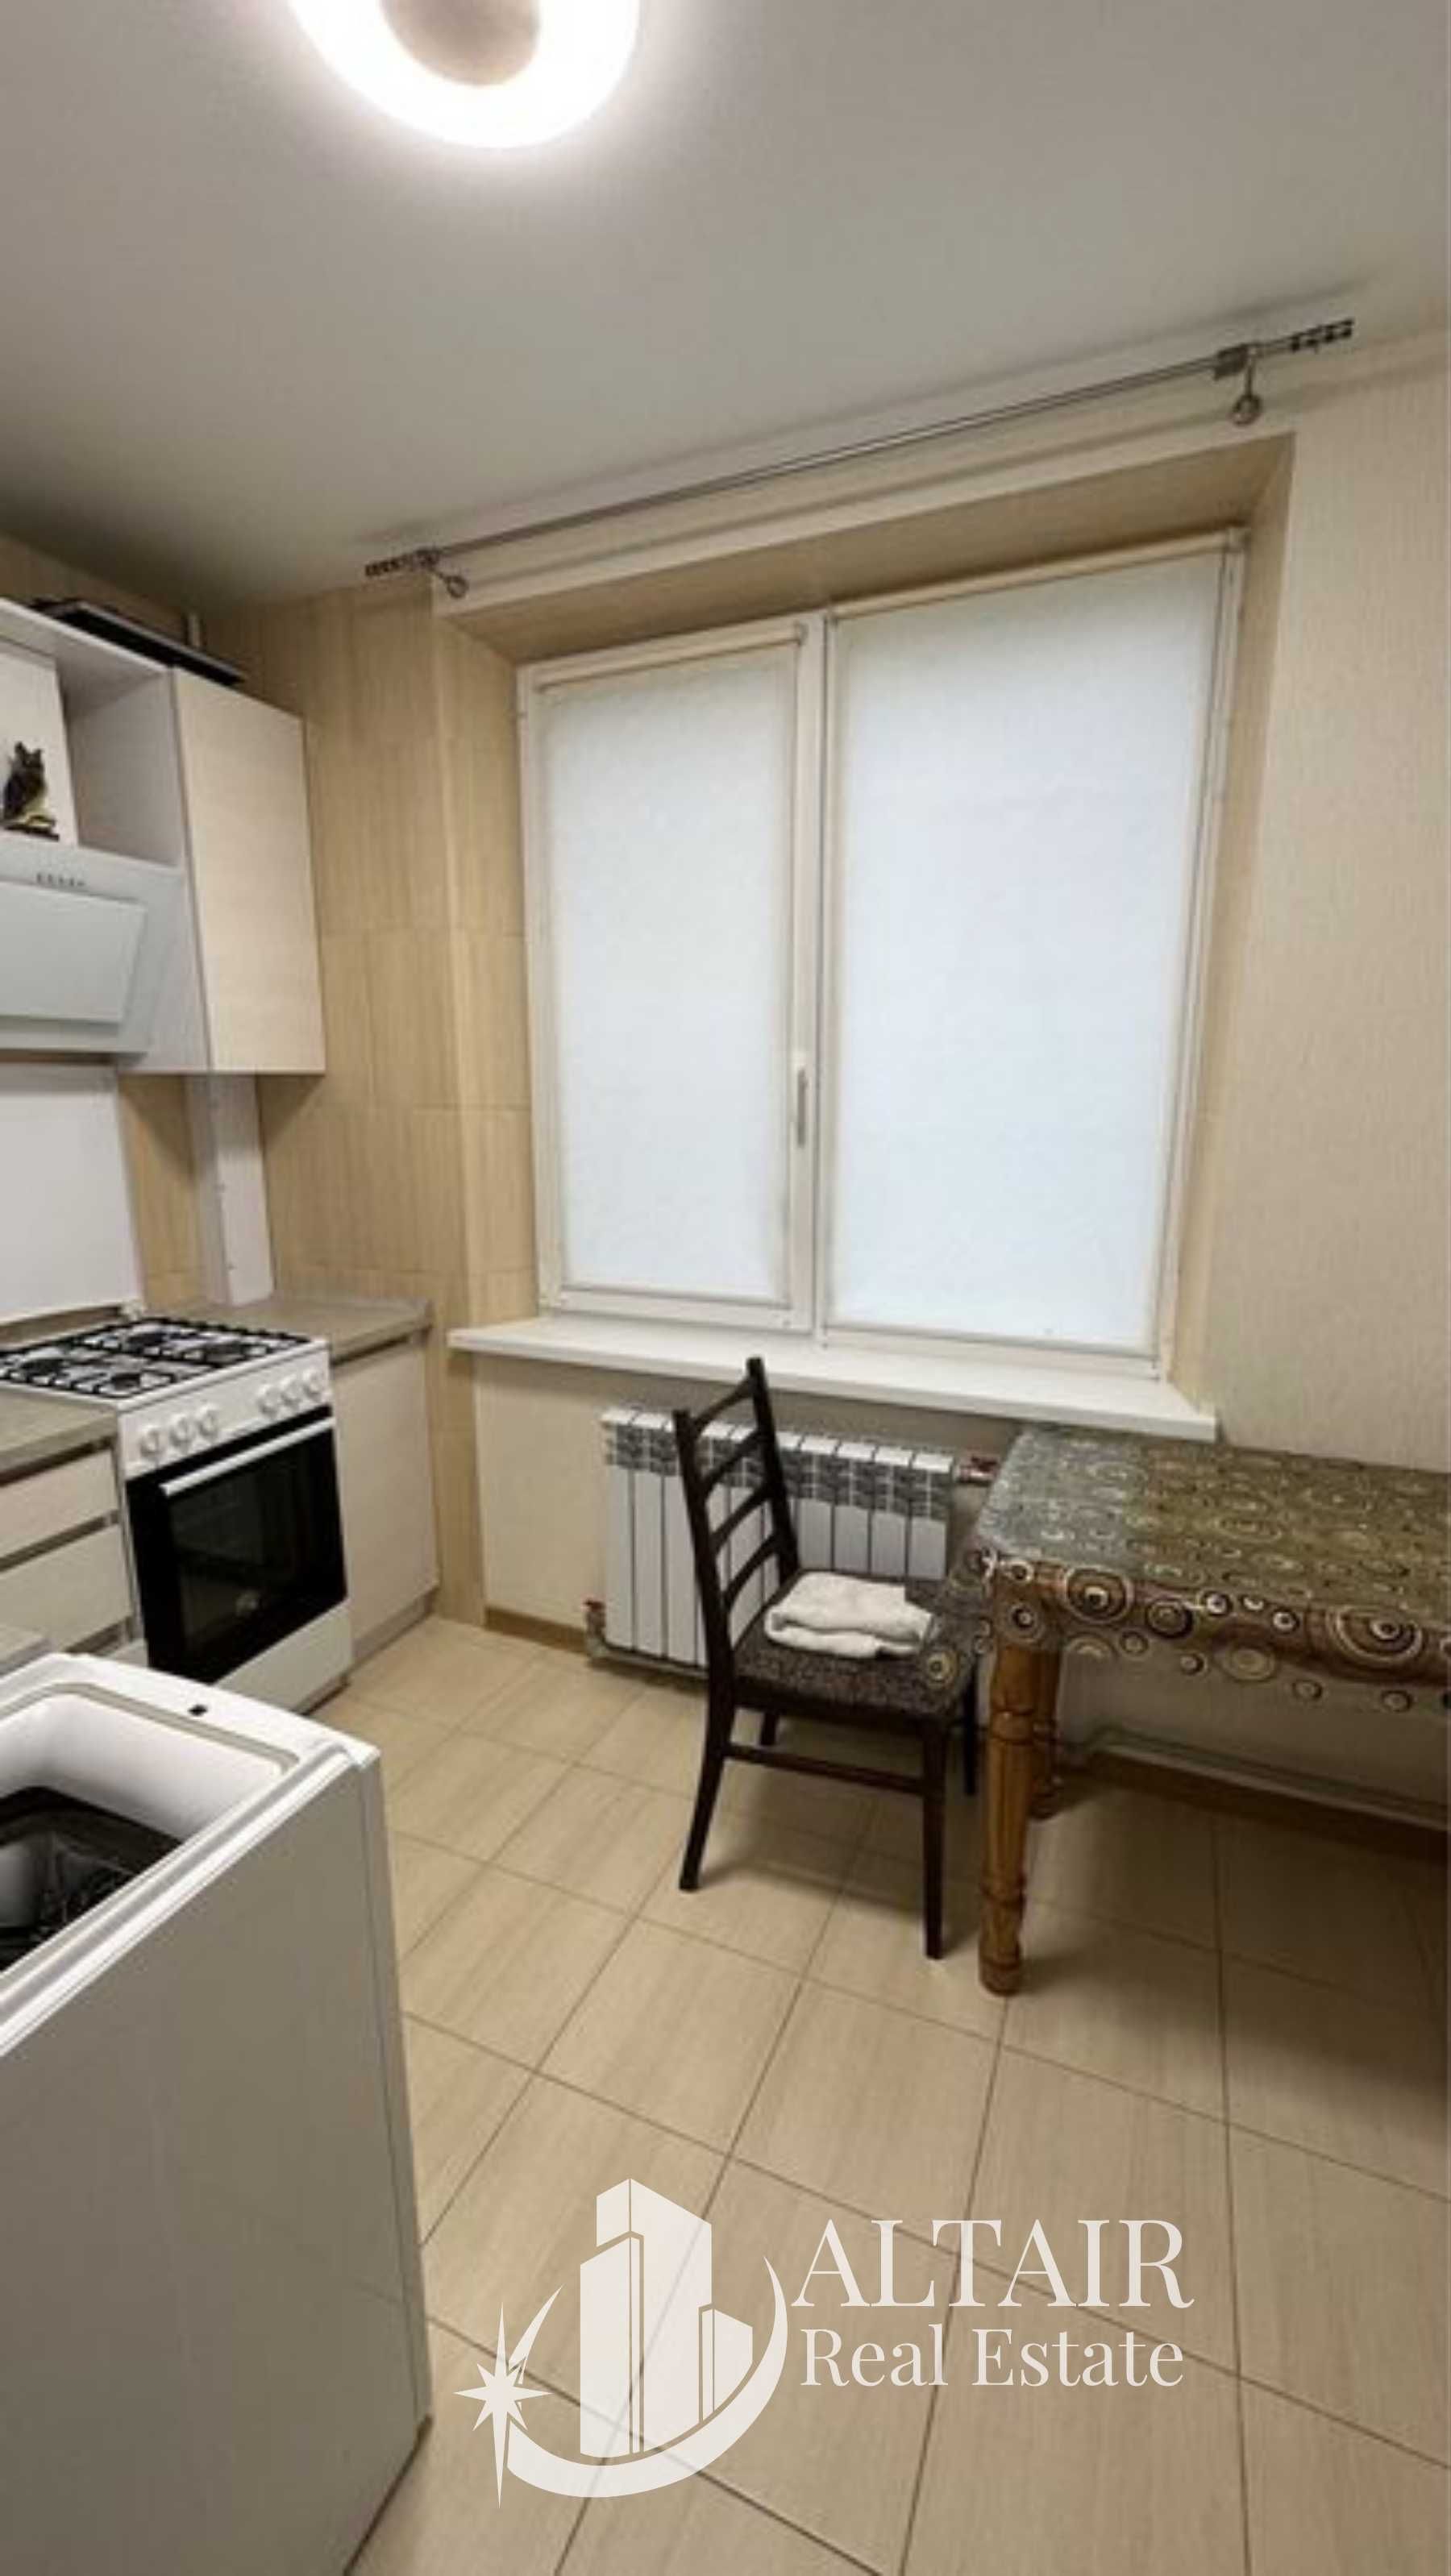 Продам 1 комнатную квартиру на Алексеевке рядом с метро Победа VI